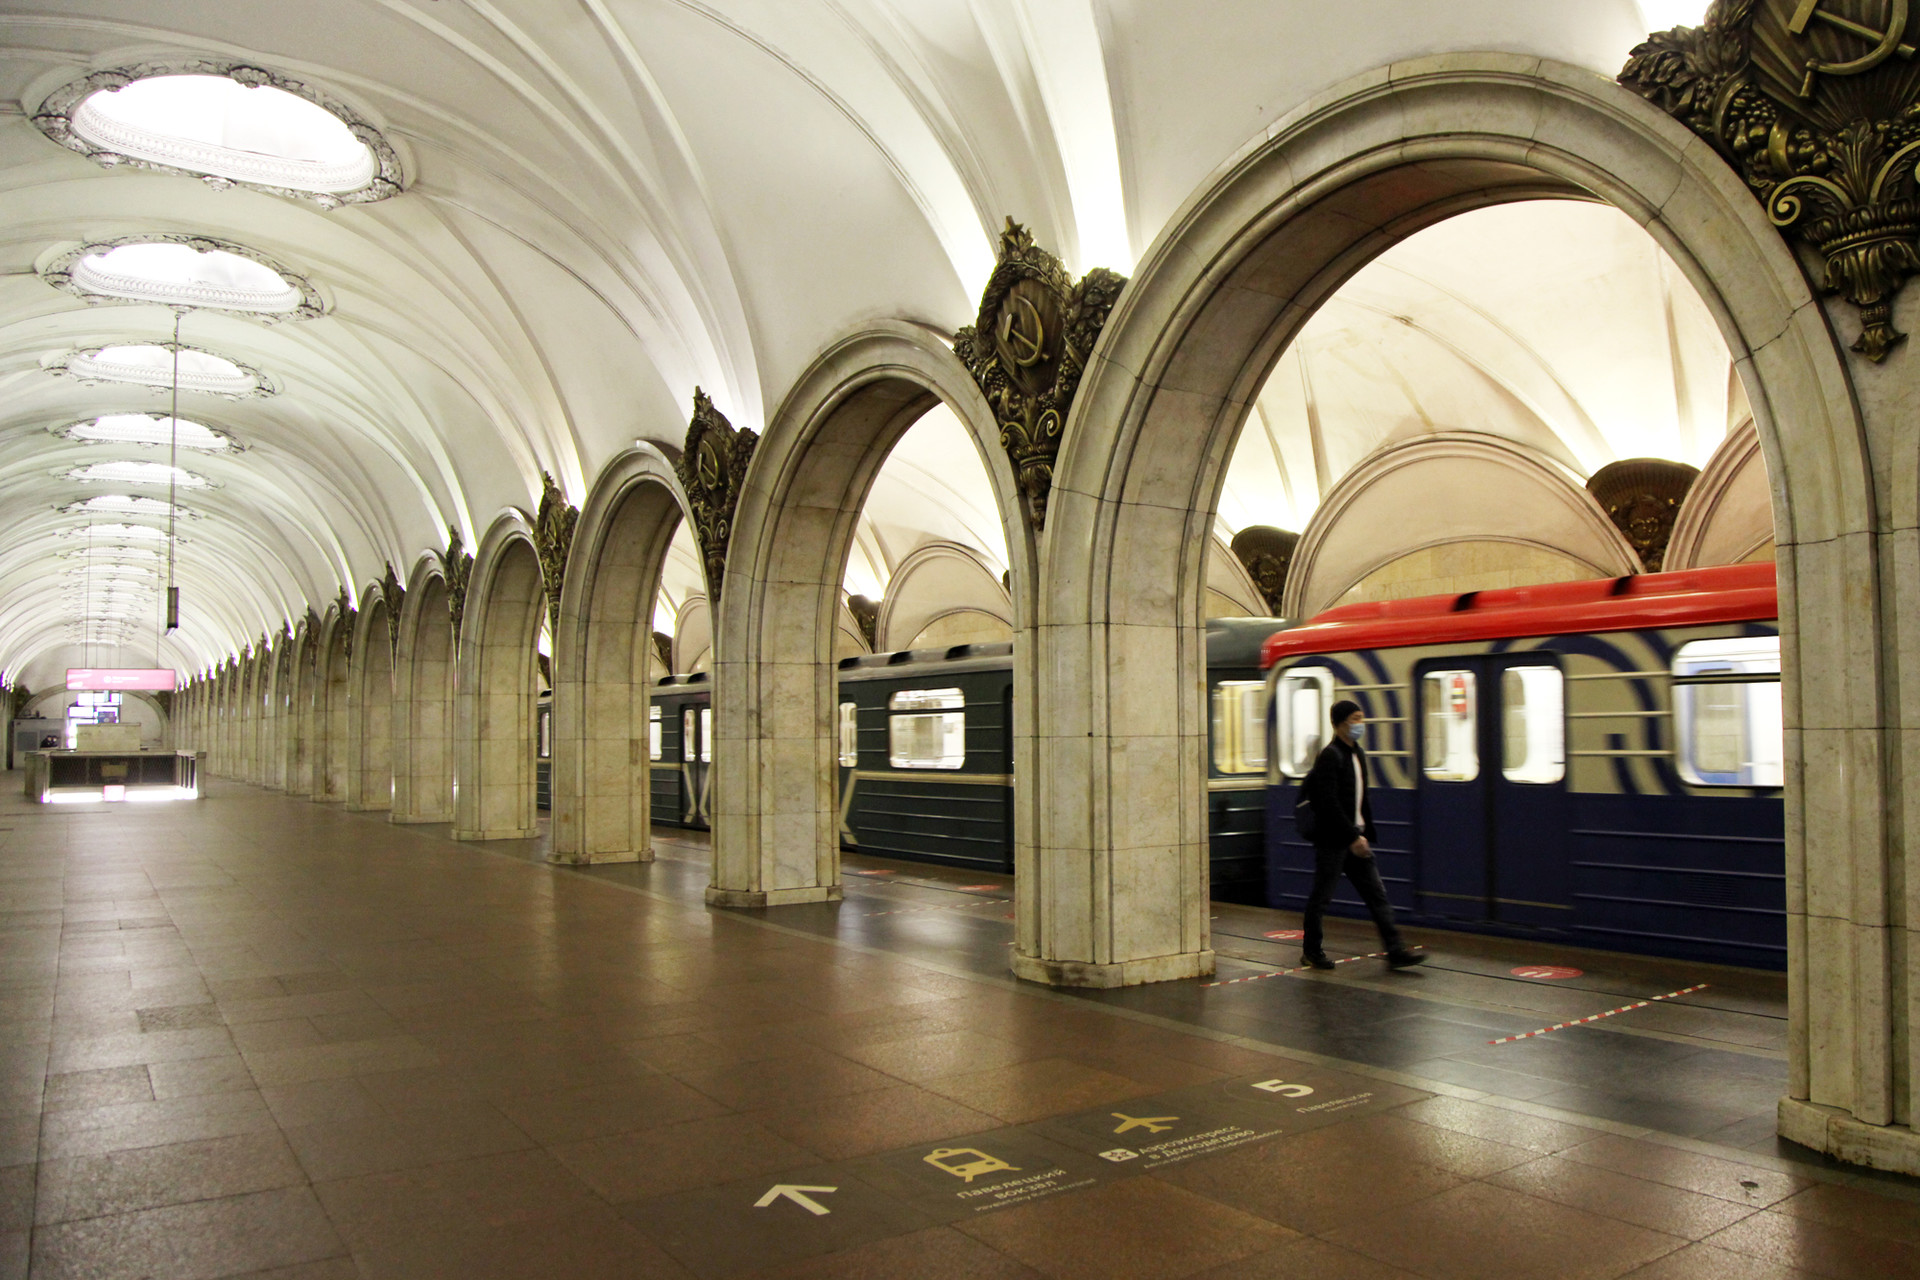 Suasana Stasiun Metro (kereta bawah tanah) Paveletskaya yang sepi penumpang.